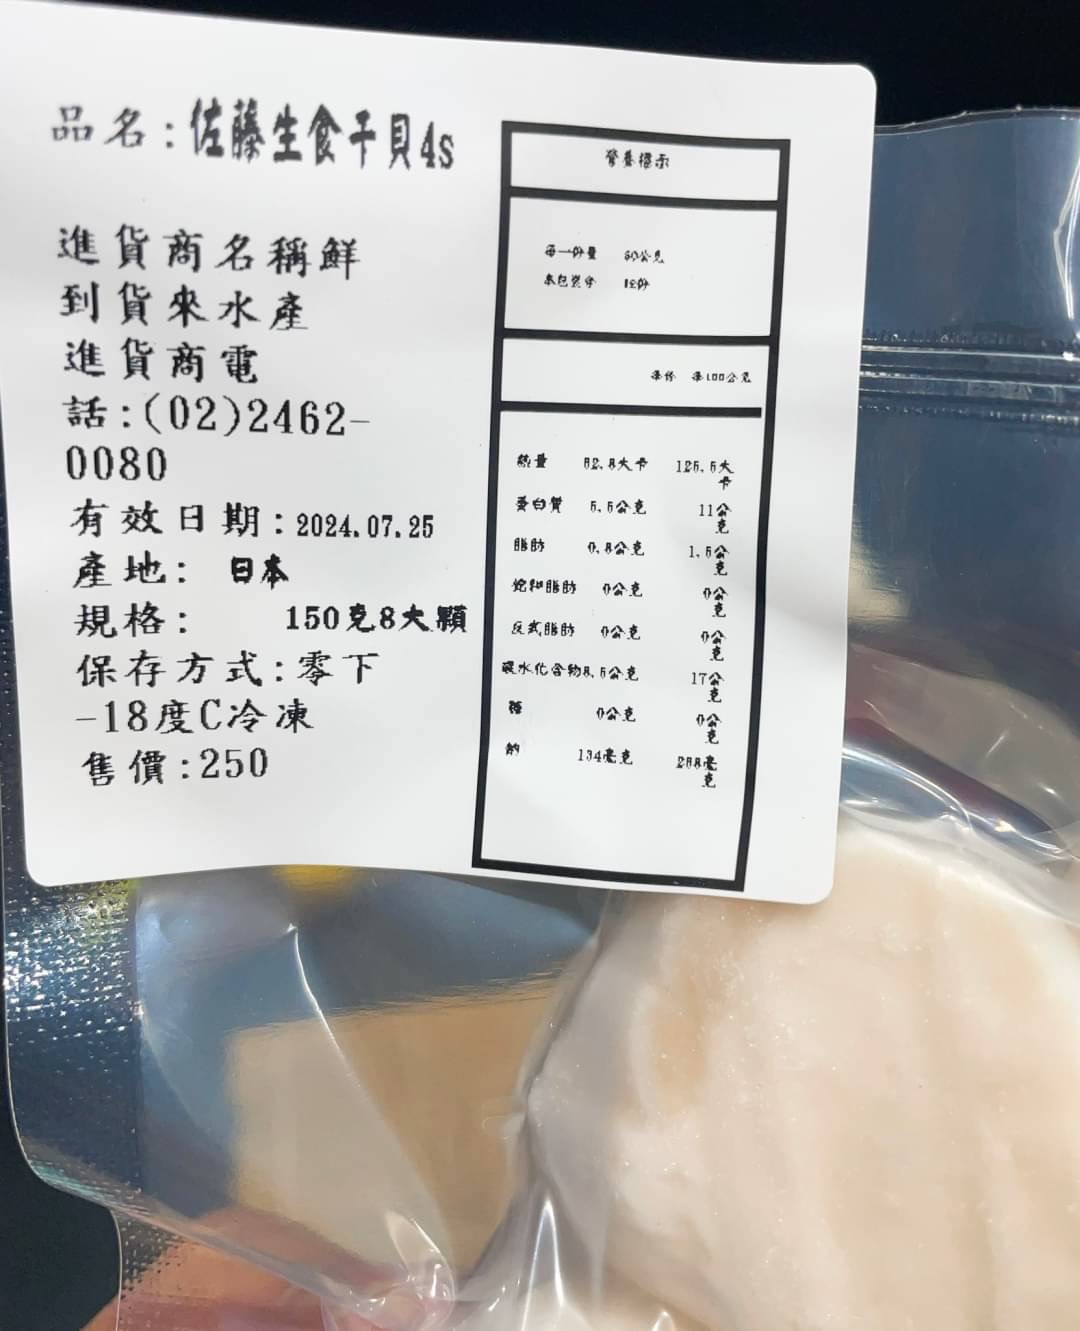 【鮮到貨】北海道佐藤4S生食級干貝150g(8顆)